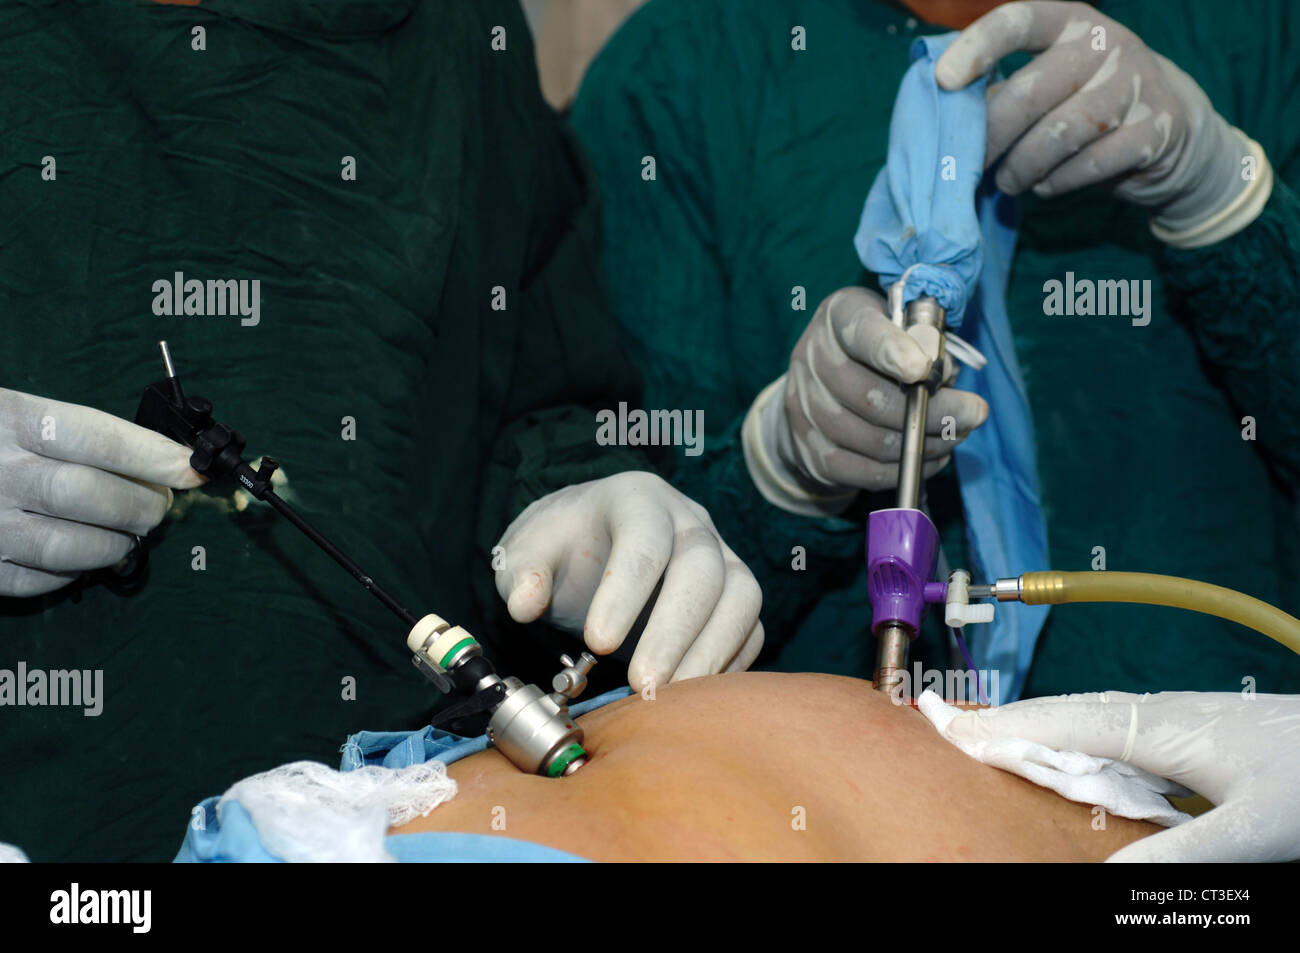 Un cirujano (derecha) un instrumento maneuveres laparoscópica en la cavidad abdominal y su ayudante (izquierda) opera la cámara; proporcionar al cirujano con una vista del interior del abdomen. Foto de stock